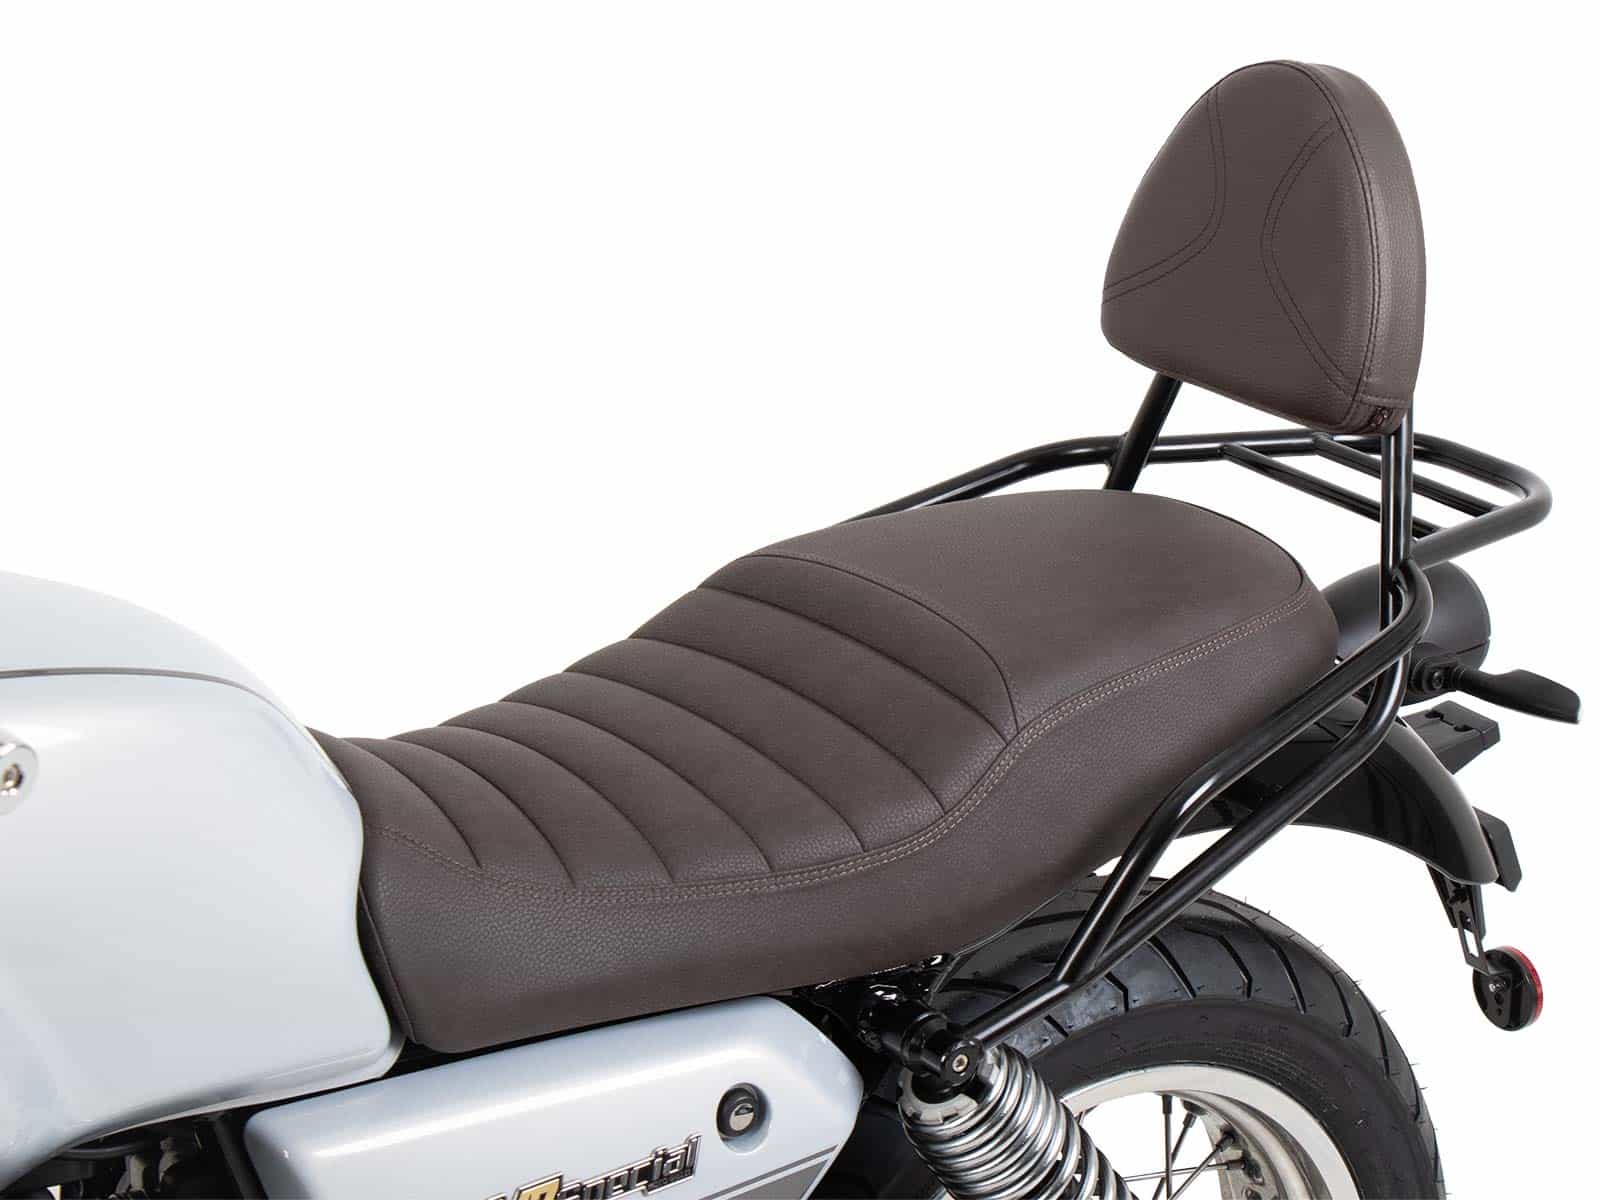 Sissybar mit Gepäckträger schwarz/braun für Moto Guzzi V7 Special/Stone/Centenario (2021-)